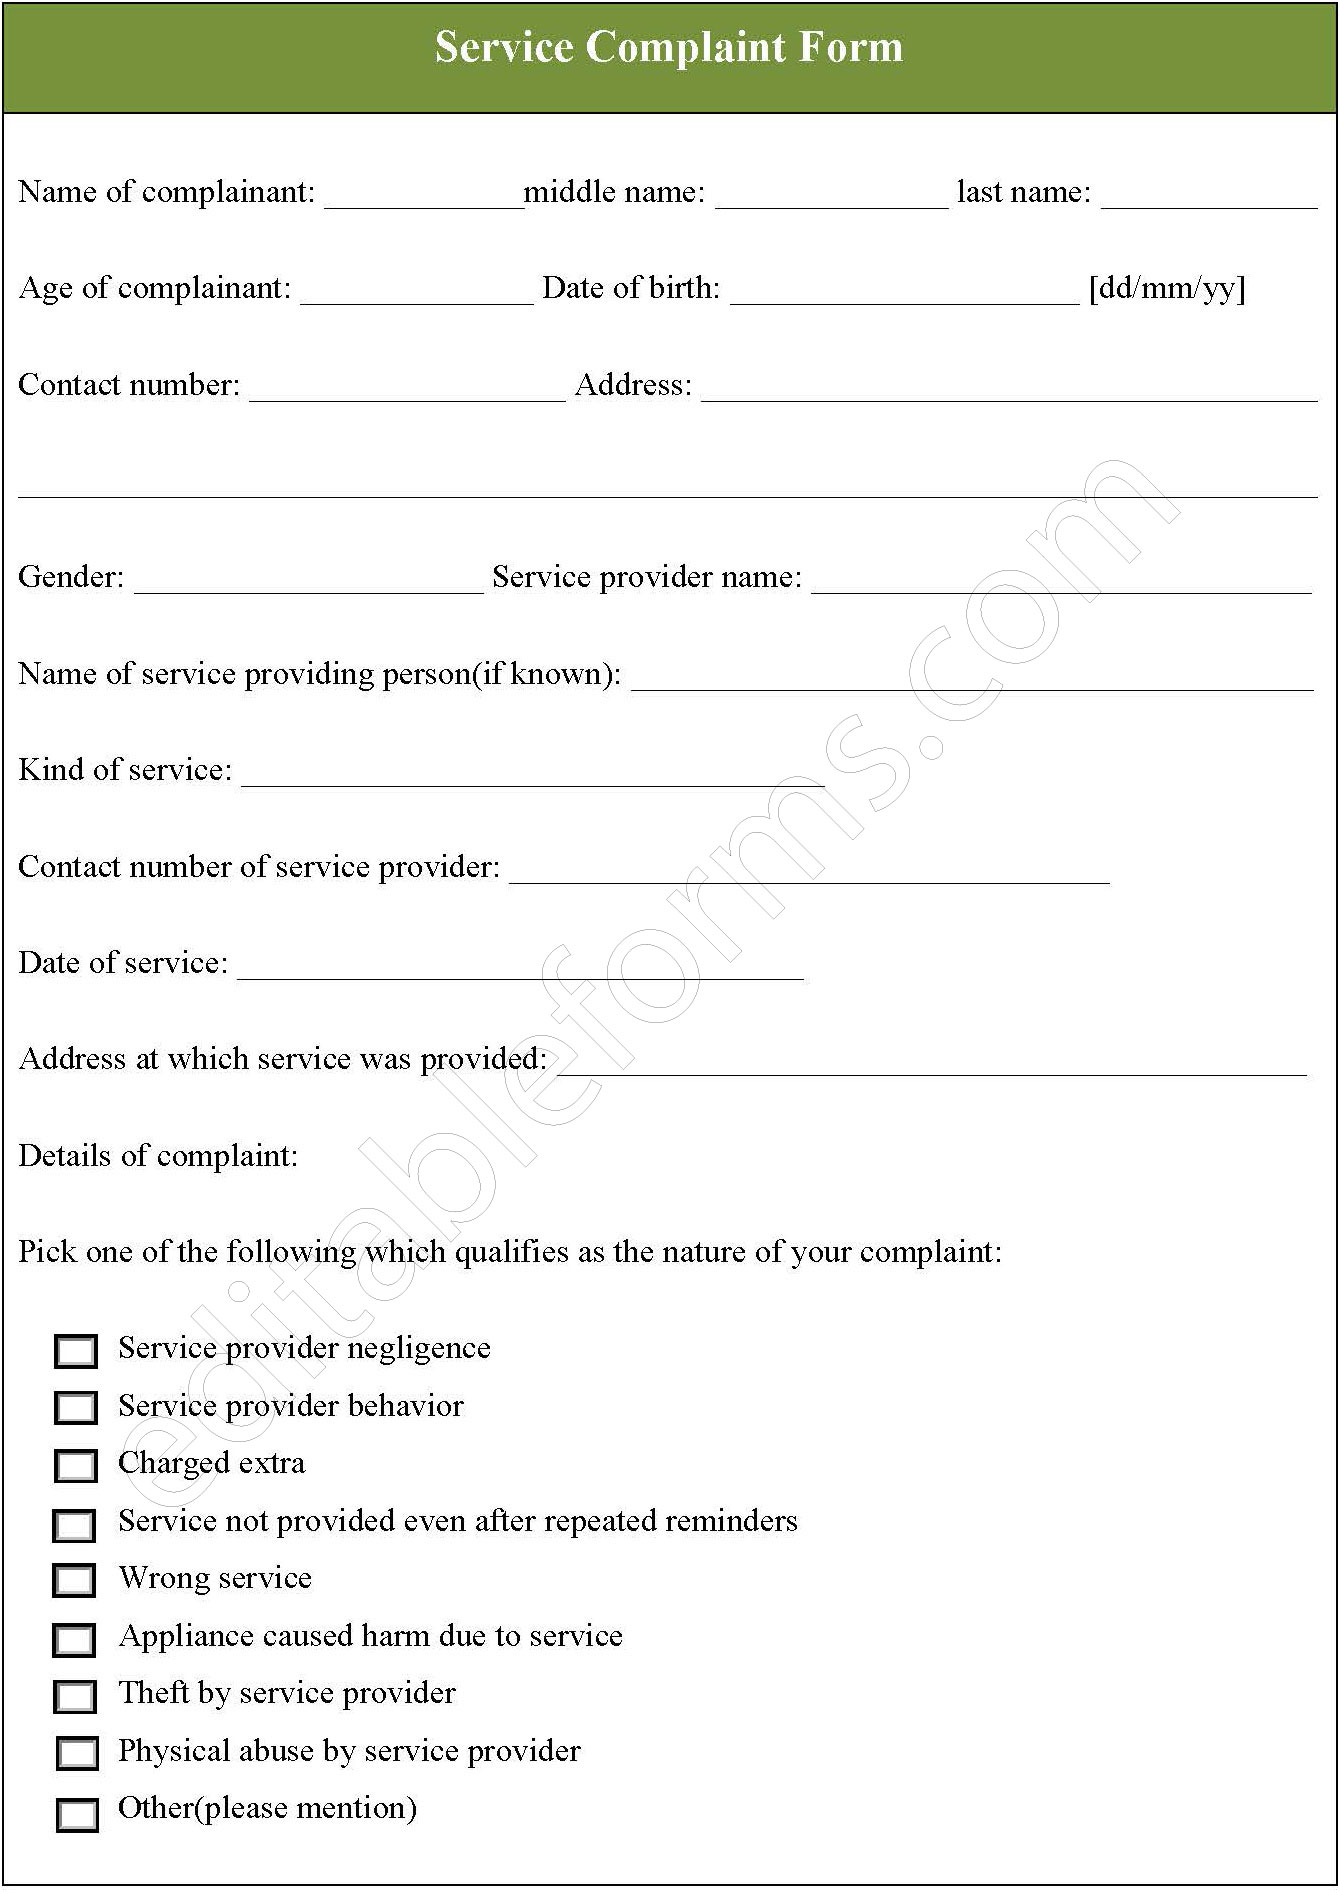 Service Complaint Form